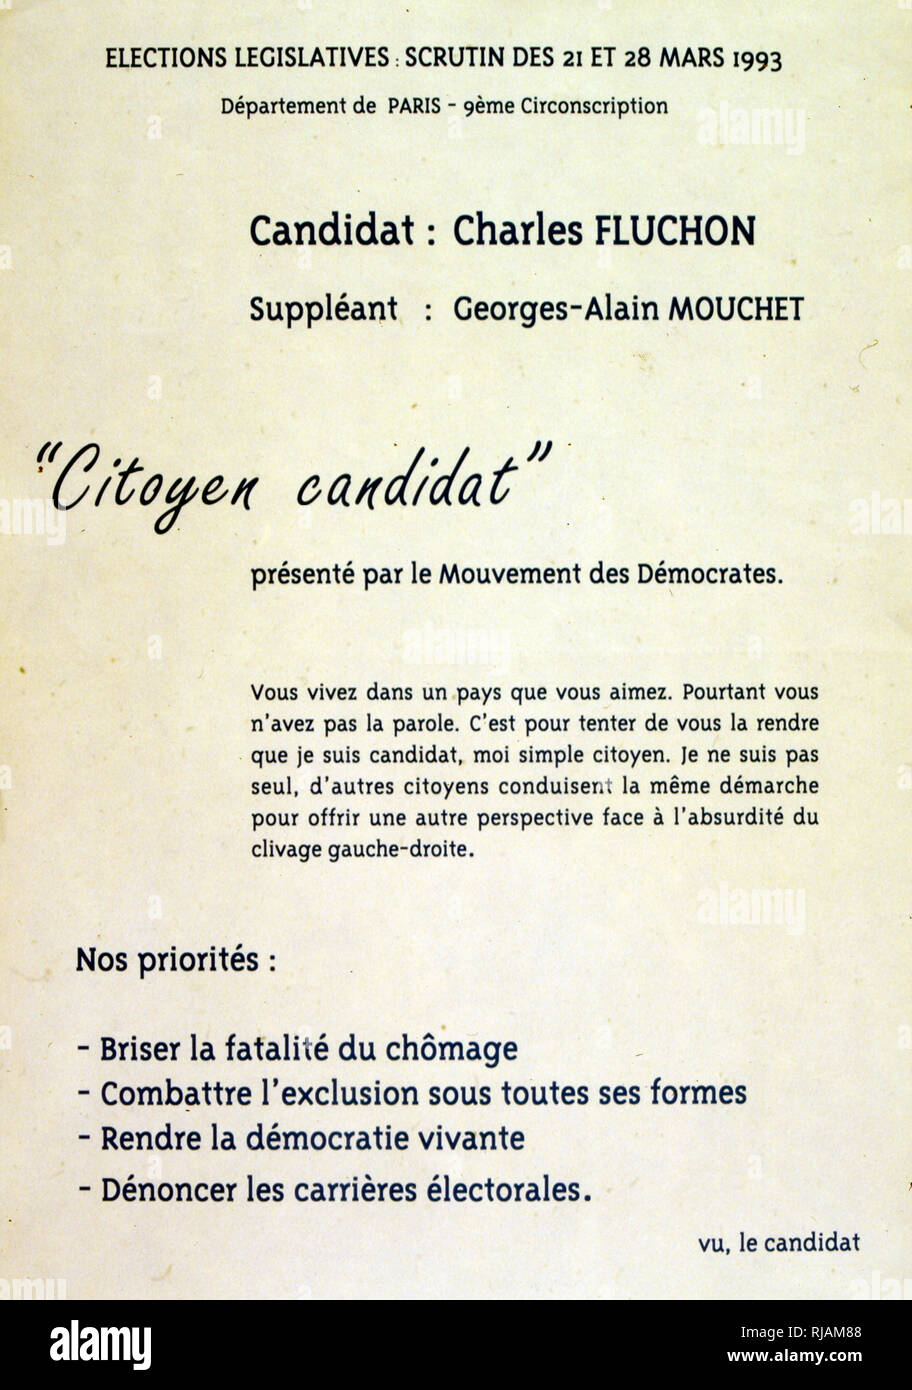 Cartellone elettorale per Charles Fluchon del movimento democratico, Francia 1993 Foto Stock